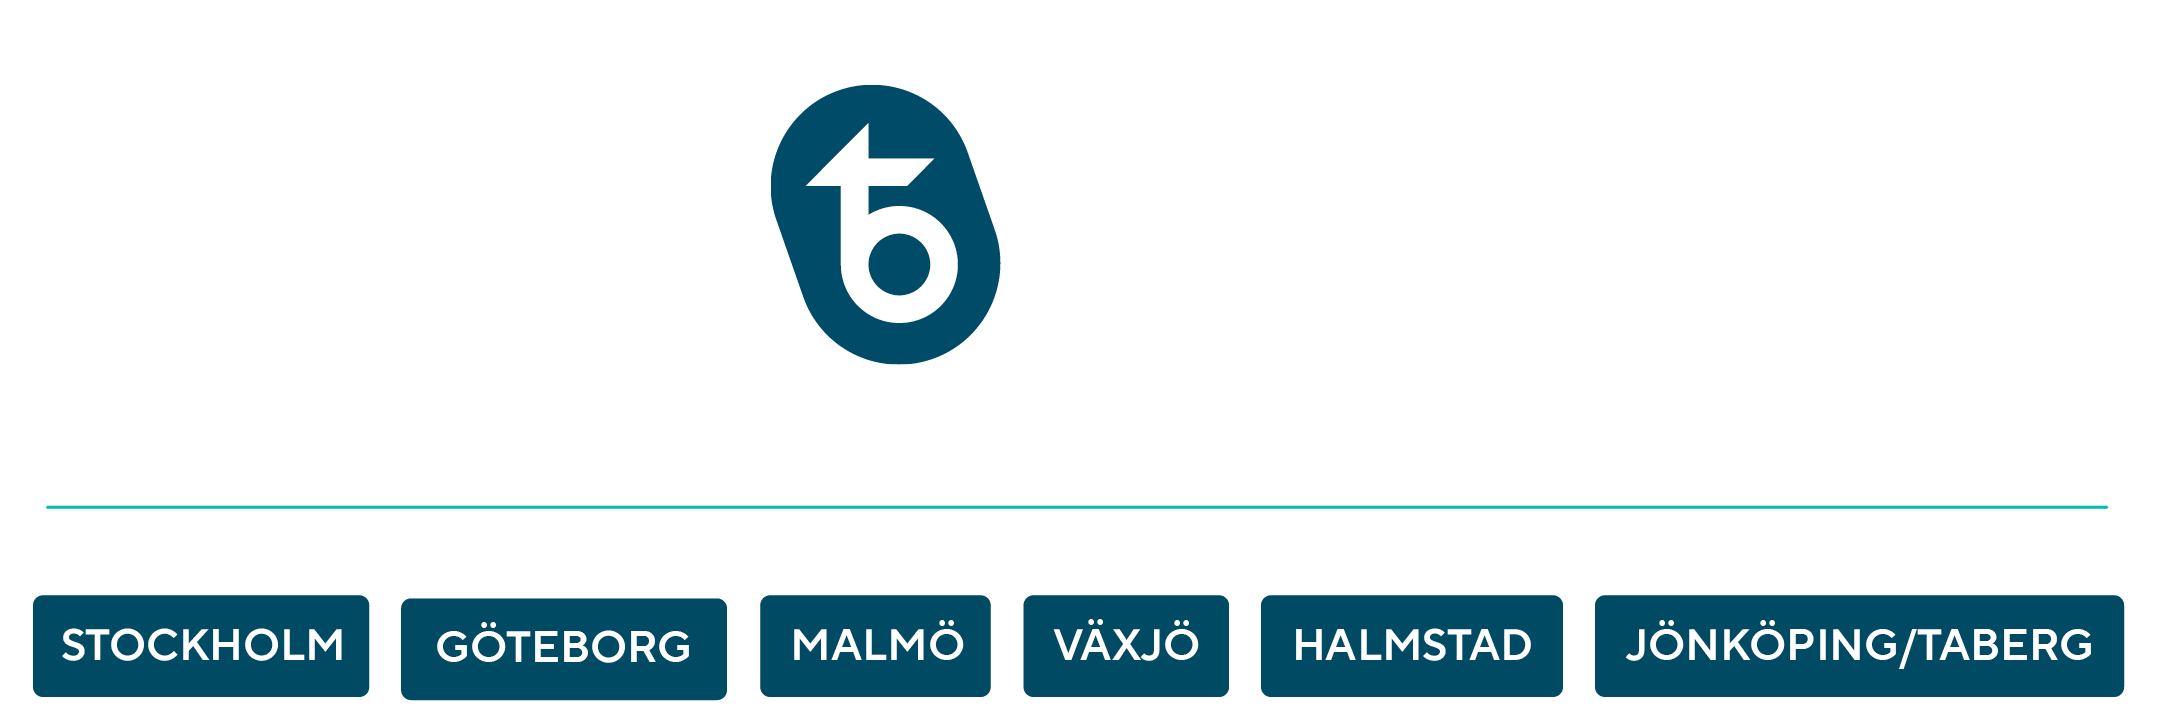 Taberg Media Group - Träd